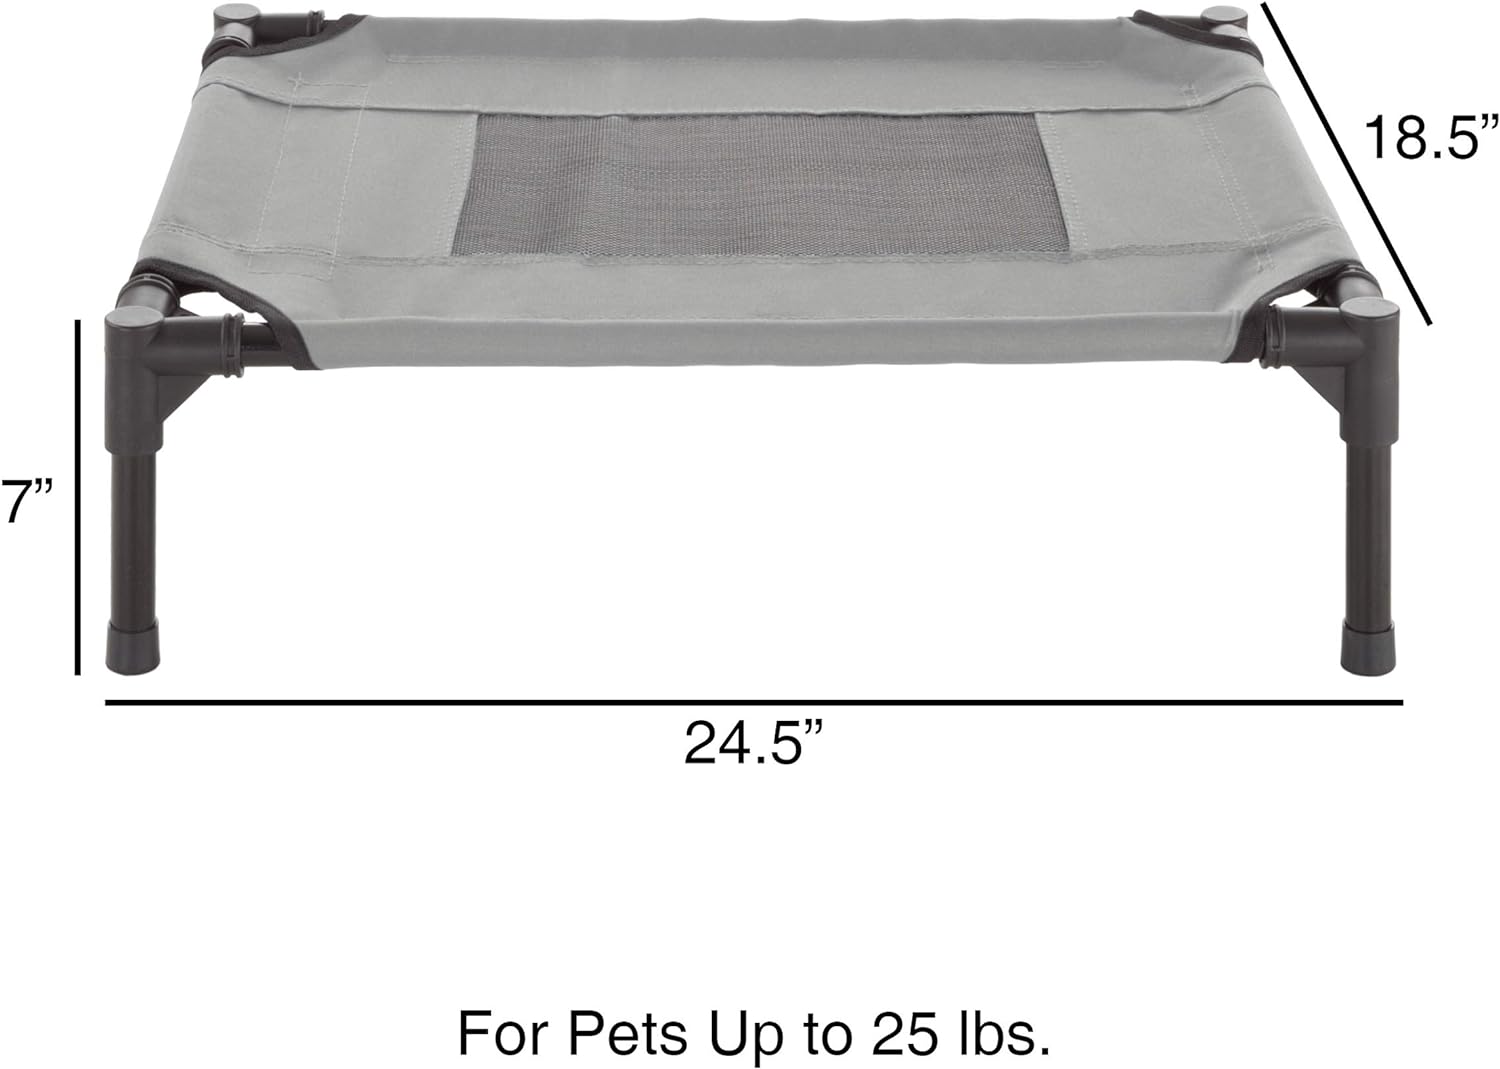 Lit surélevé pour chien – Lit portable pour animal de compagnie de 76,2 x 61 cm avec pieds antidérapants – Lit pour chien ou chiot pour intérieur/extérieur pour animaux jusqu'à 22,7 kg (bleu)